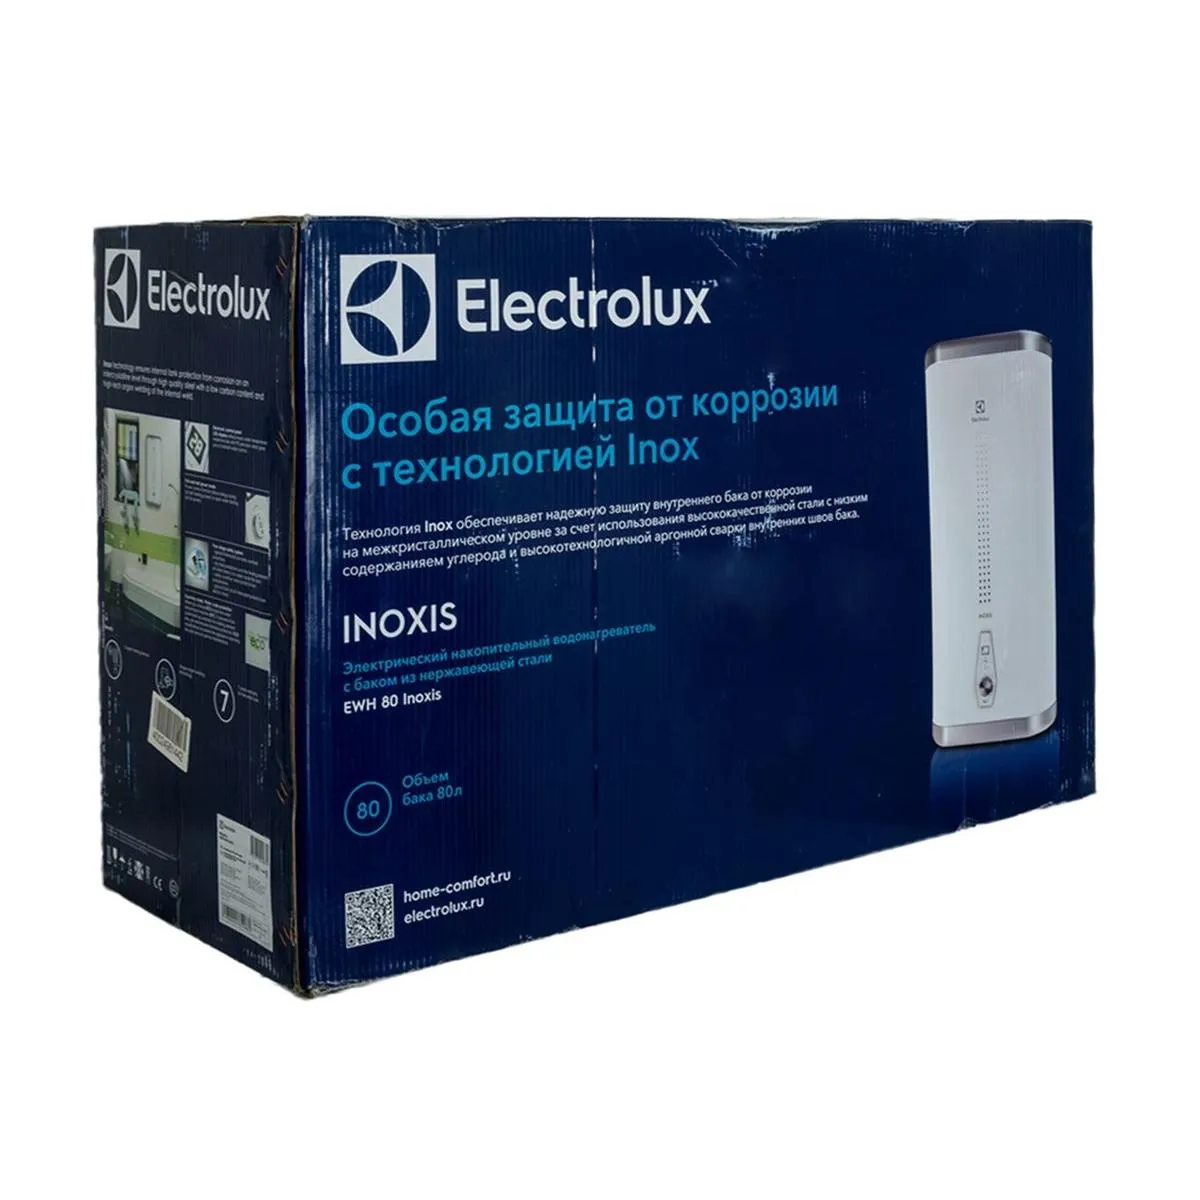 Electrolux EWH 100 Inoxis